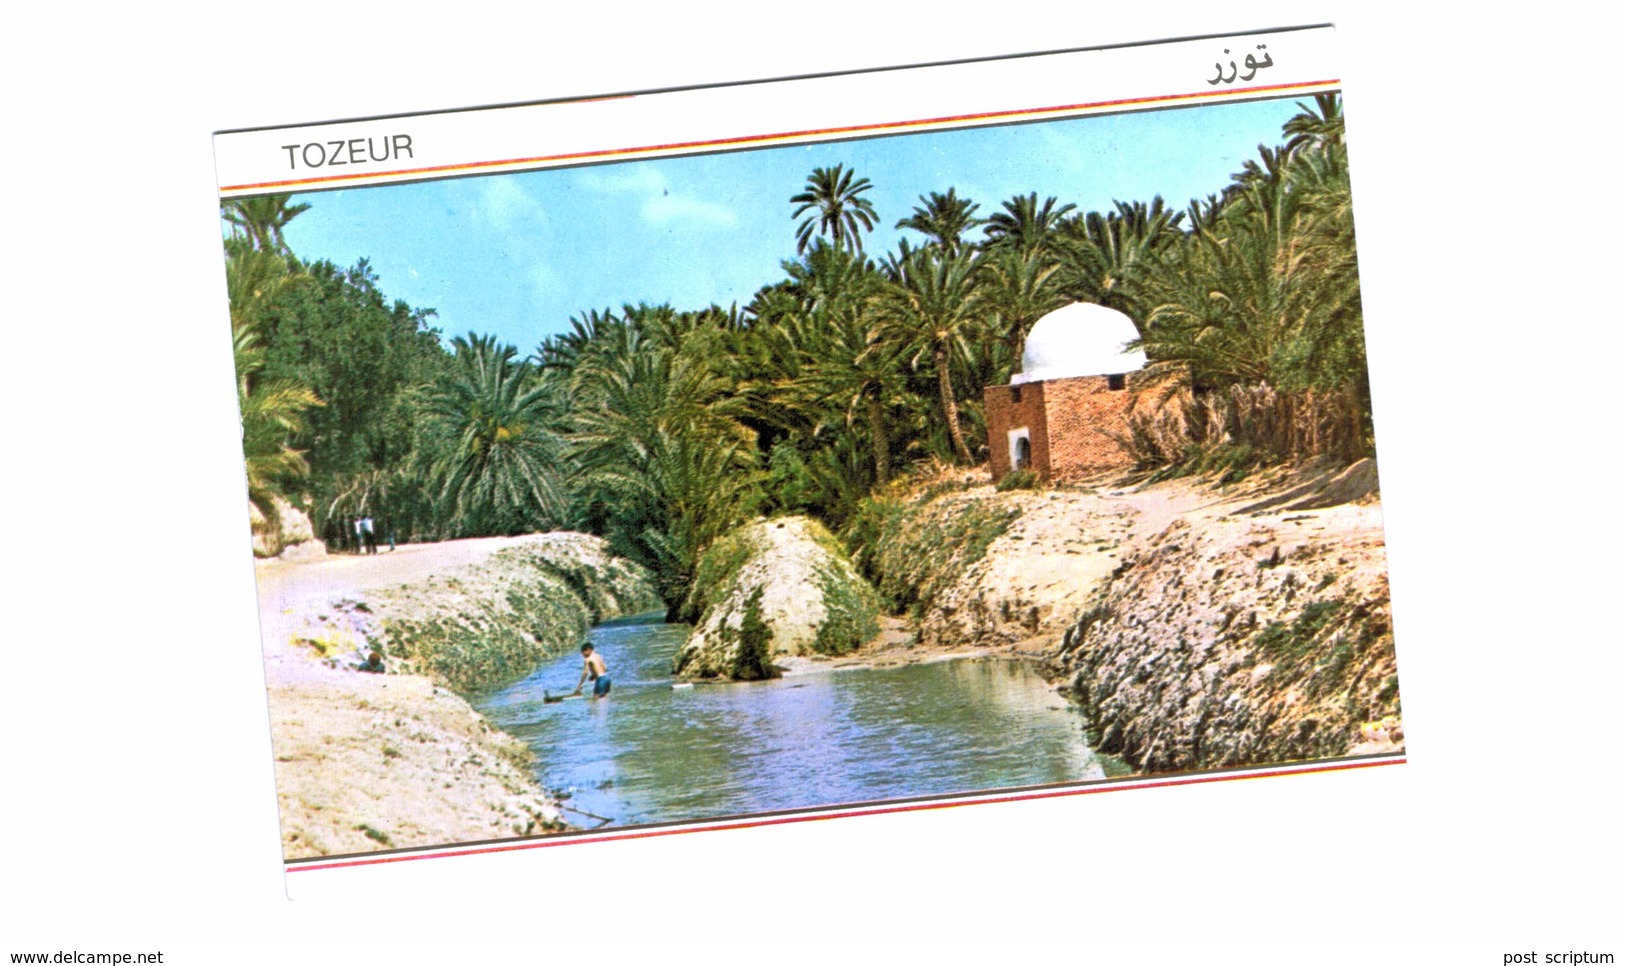 Lot 151 - Tunisie - 147 cartes